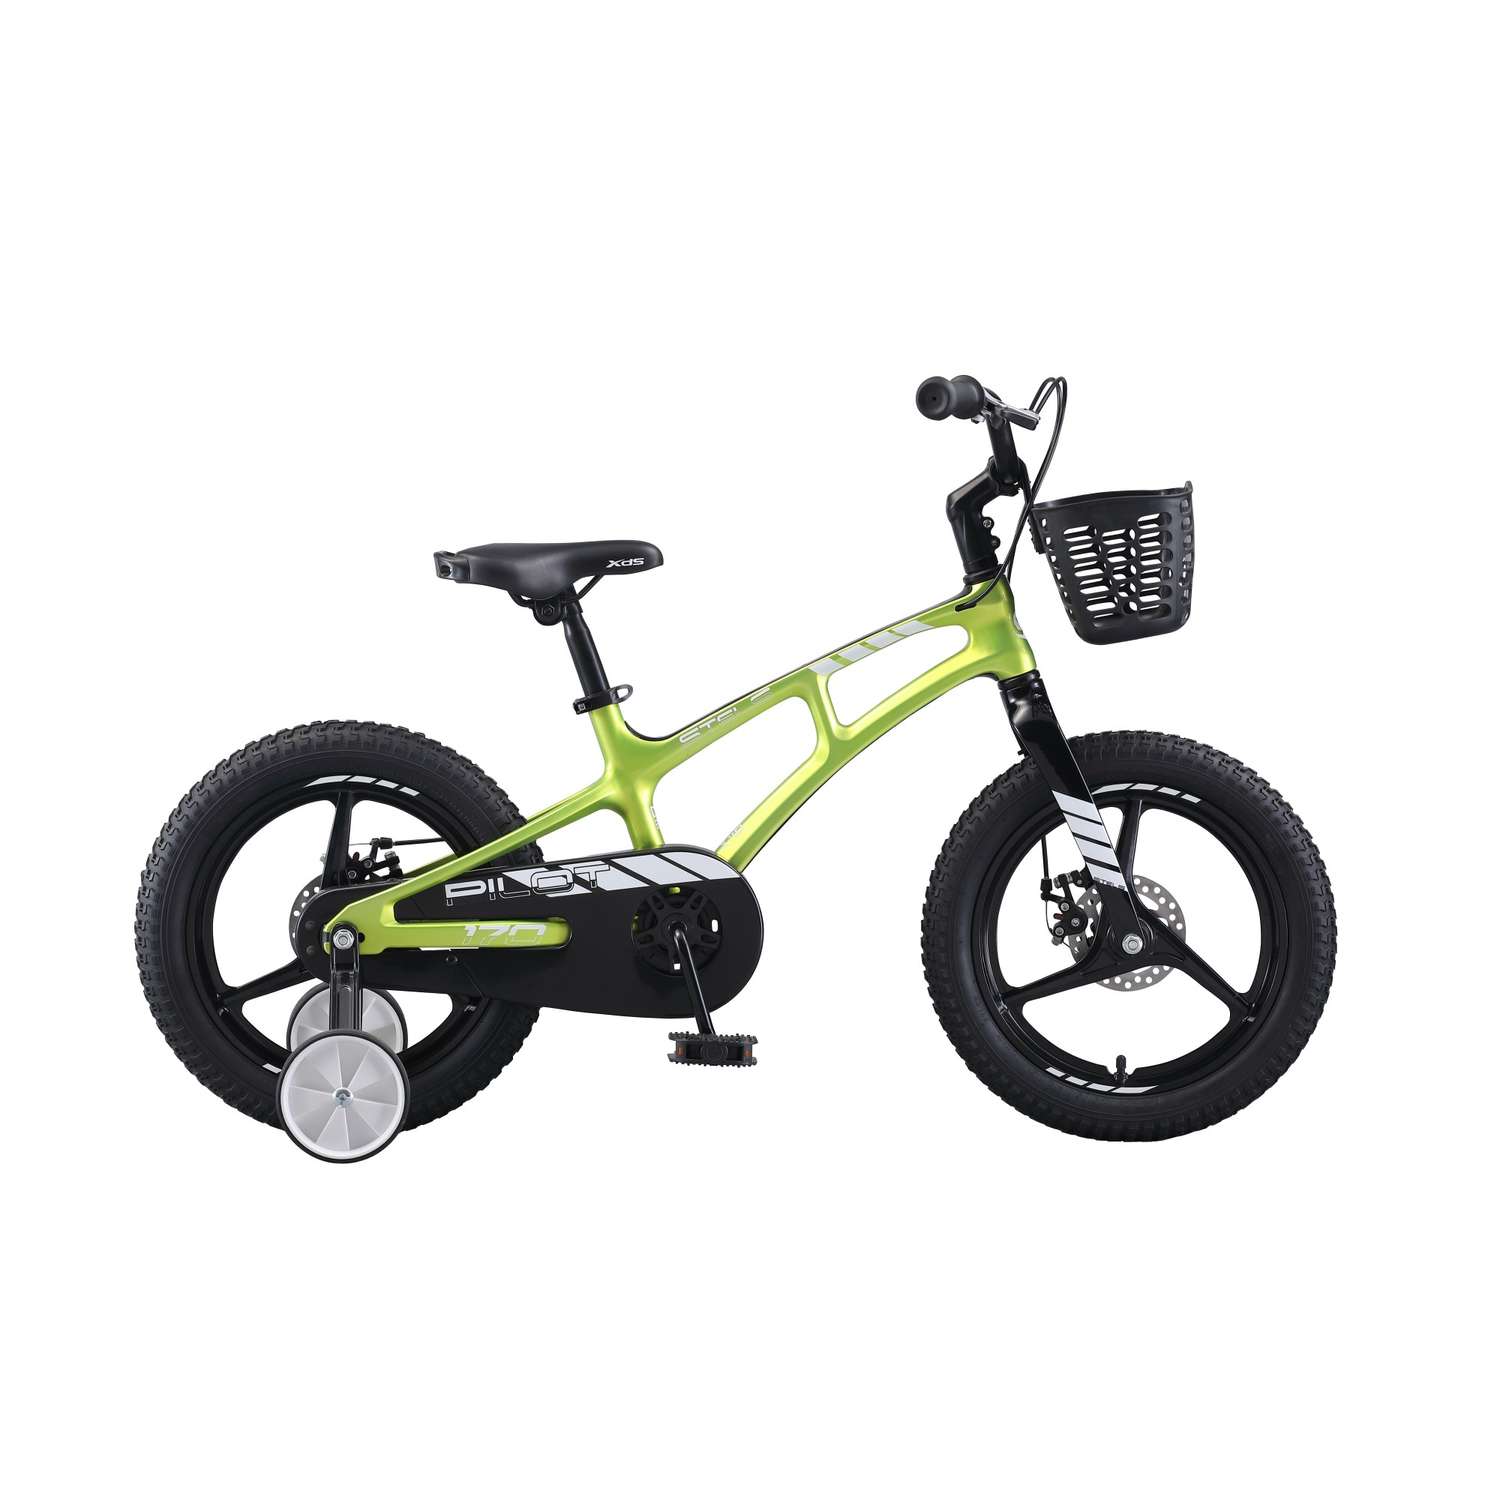 Детский велосипед STELS Pilot-170 MD 16 (V010) зеленый - фото 1